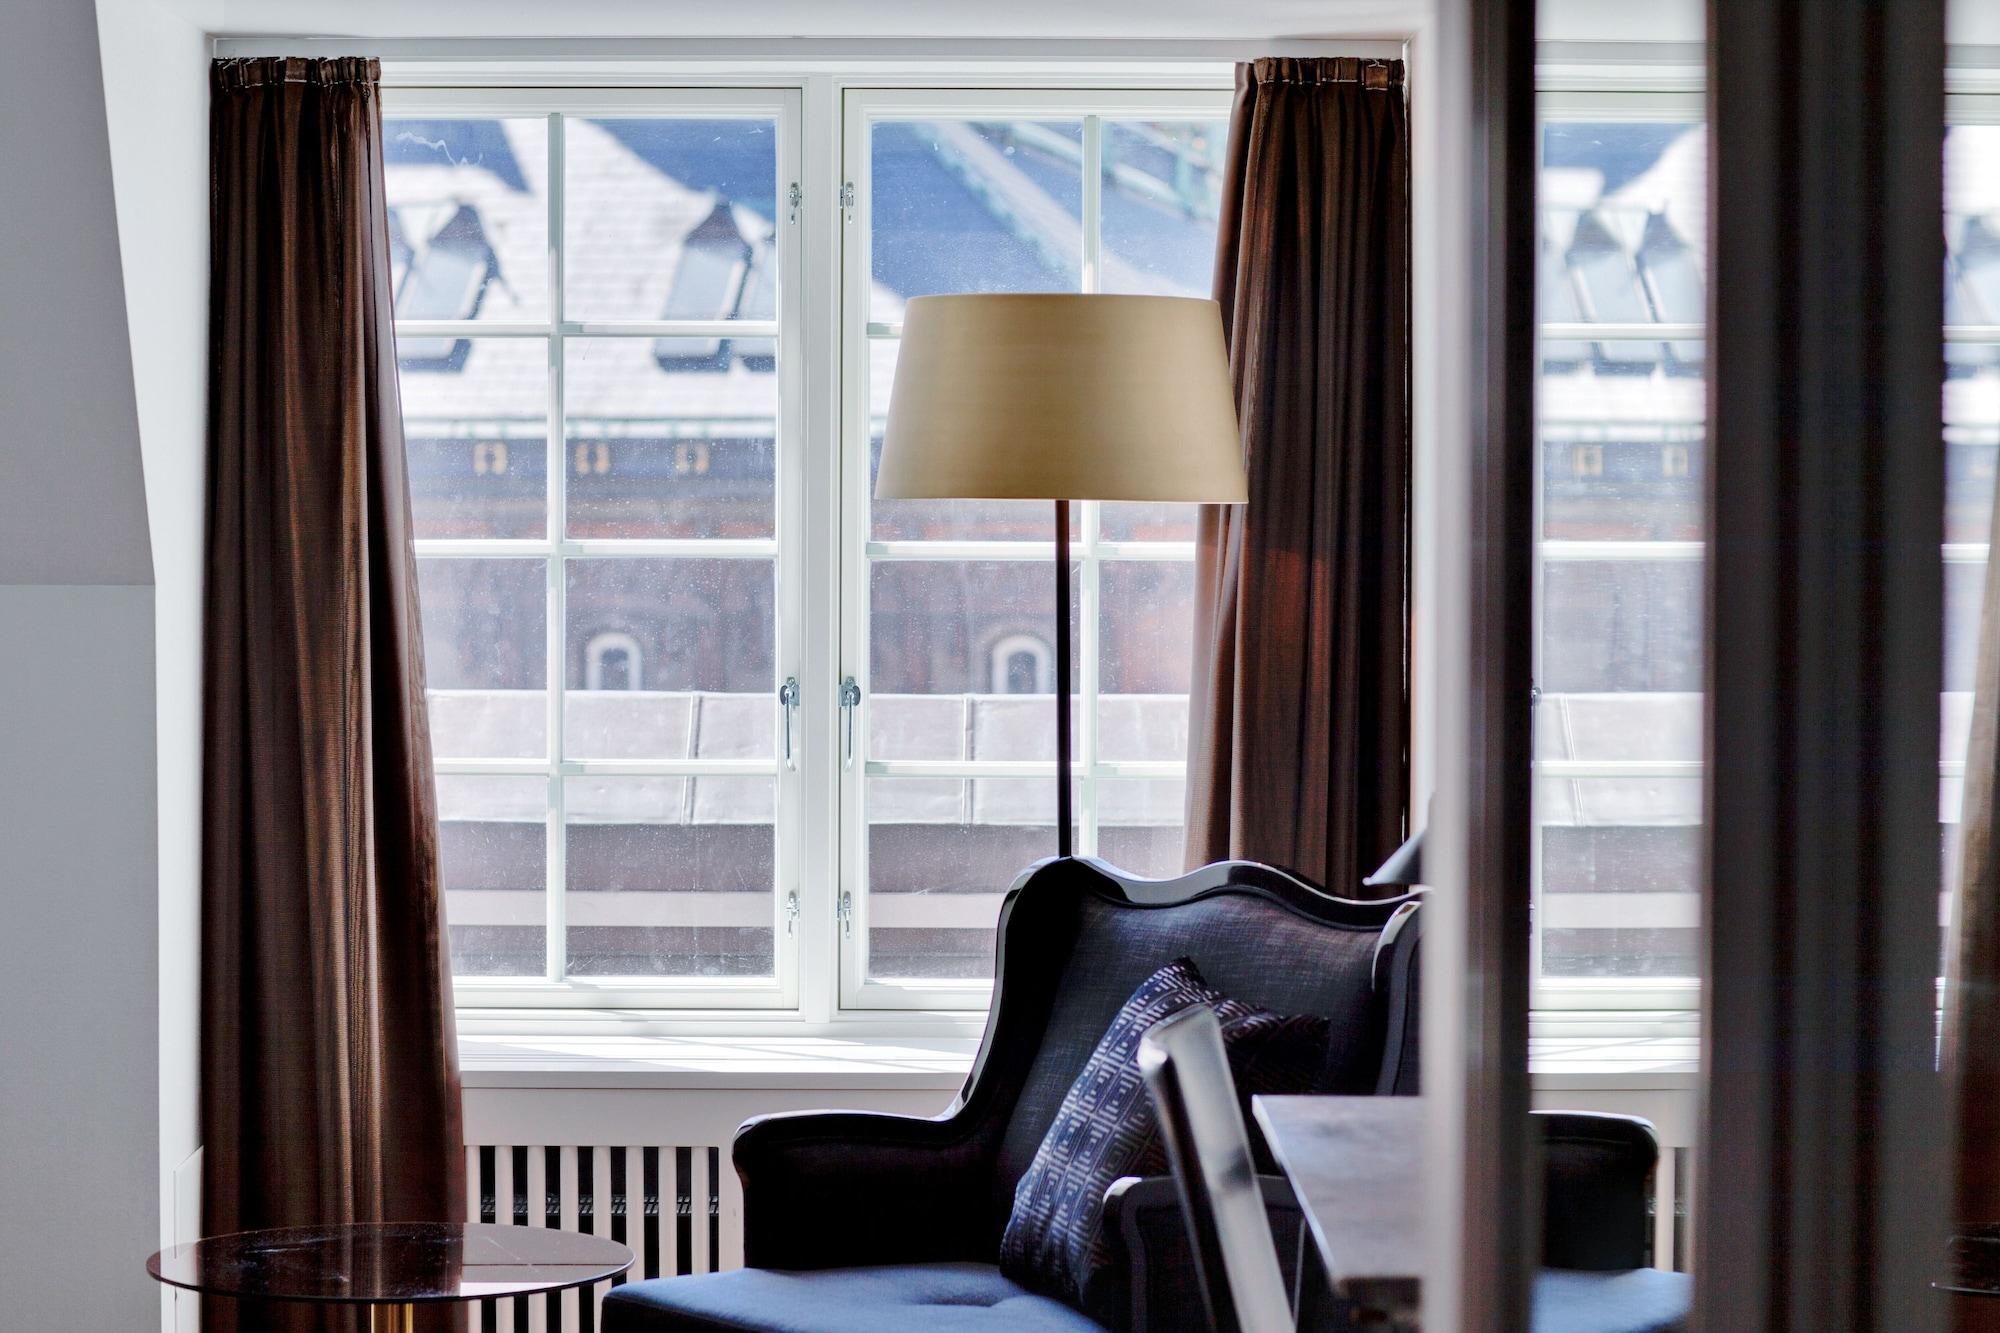 スカンディック パレス ホテル コペンハーゲン エクステリア 写真